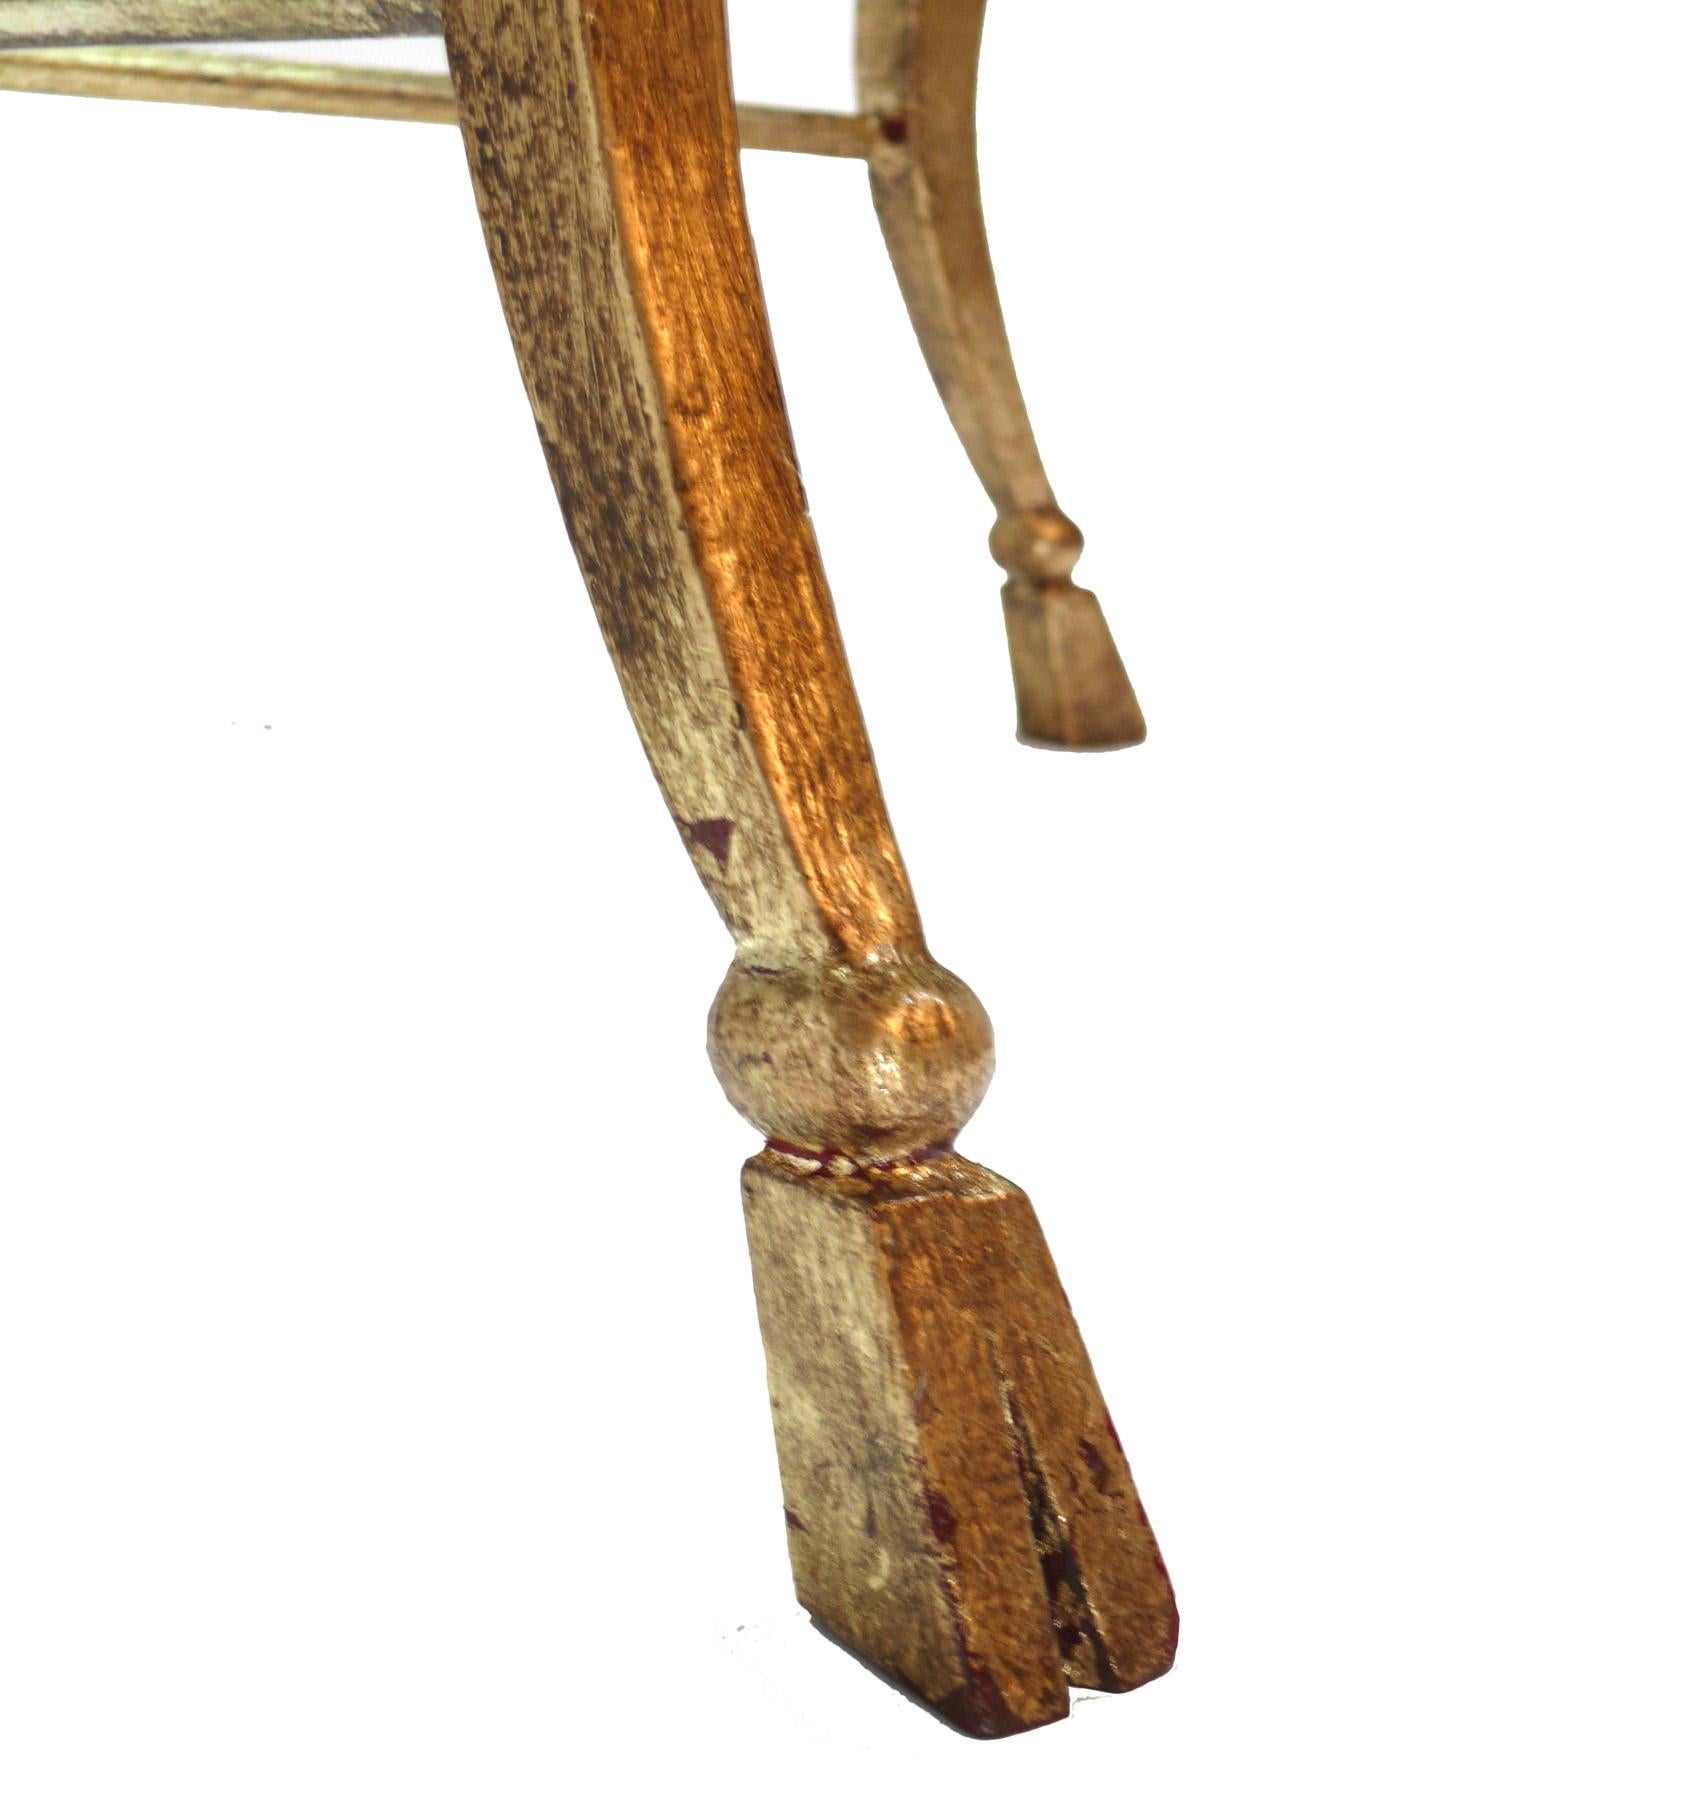 Élégante table basse française en fer doré, attribuée à la Maison Ramsay, France, vers les années 1950. Le fer doré a conservé sa magnifique patine d'origine. Qualité, construction lourde et plateau en verre épais.